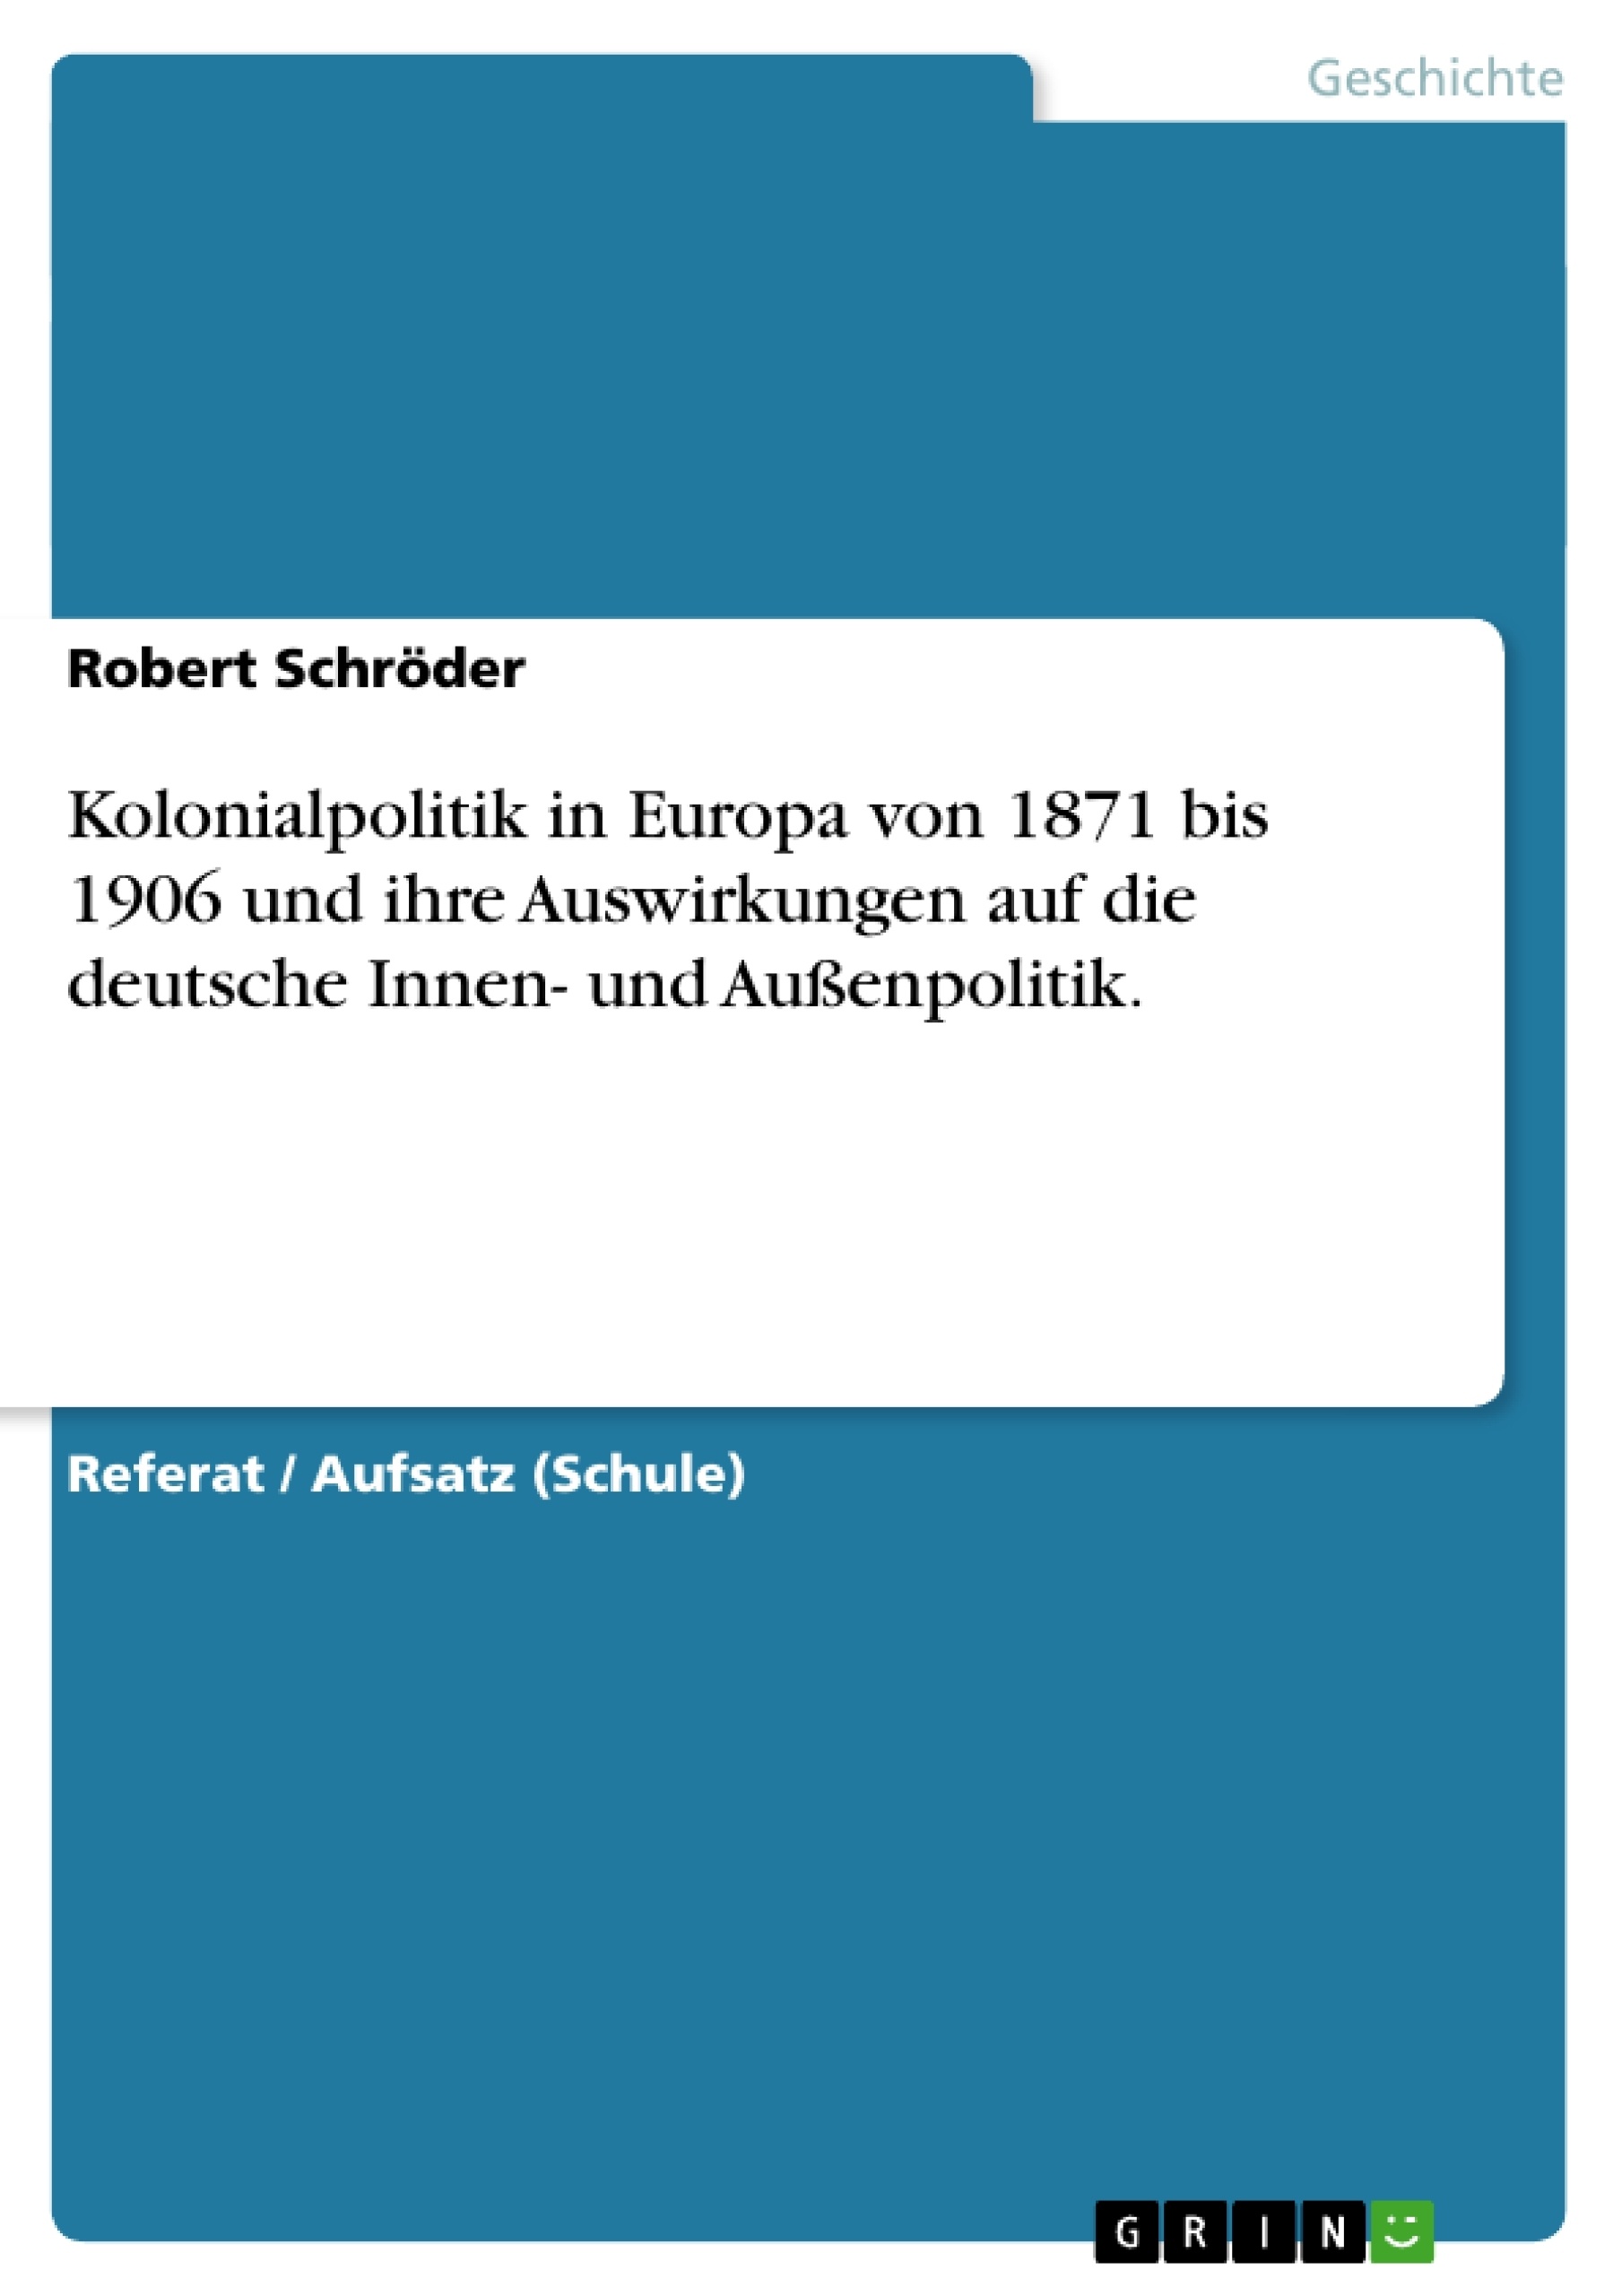 Titel: Kolonialpolitik in Europa von 1871 bis 1906 und ihre Auswirkungen auf die deutsche Innen- und Außenpolitik.